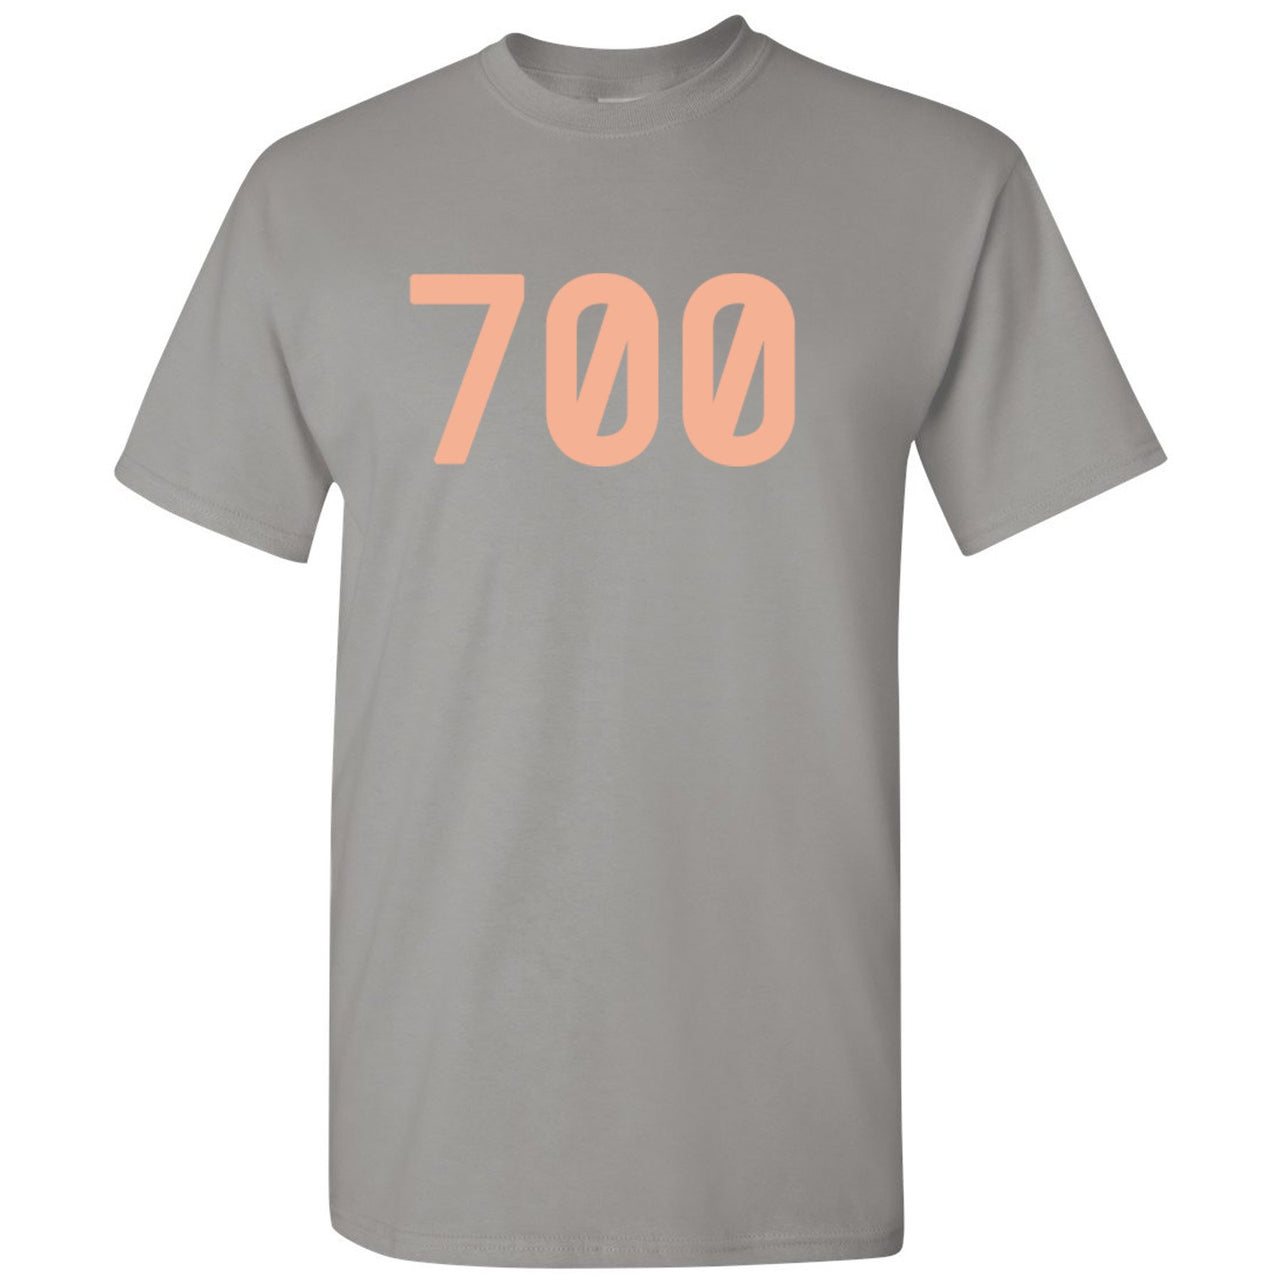 Inertia 700s T Shirt | 700, Light Gray